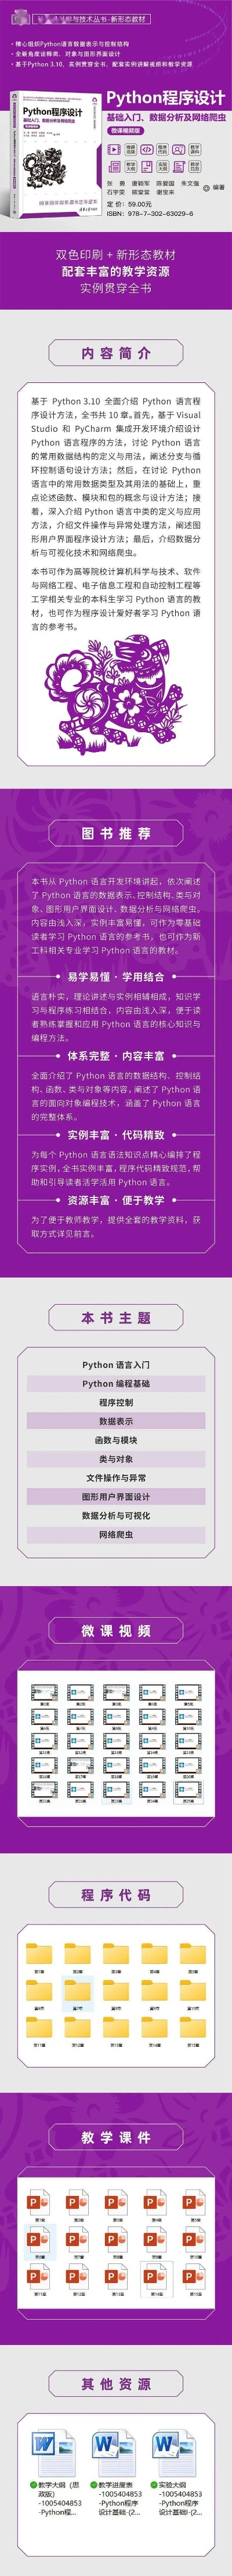 Python程序设计—基础入门、数据分析及网络<em>爬虫</em>|文末赠书_方法_<em>小结</em>_程序结构